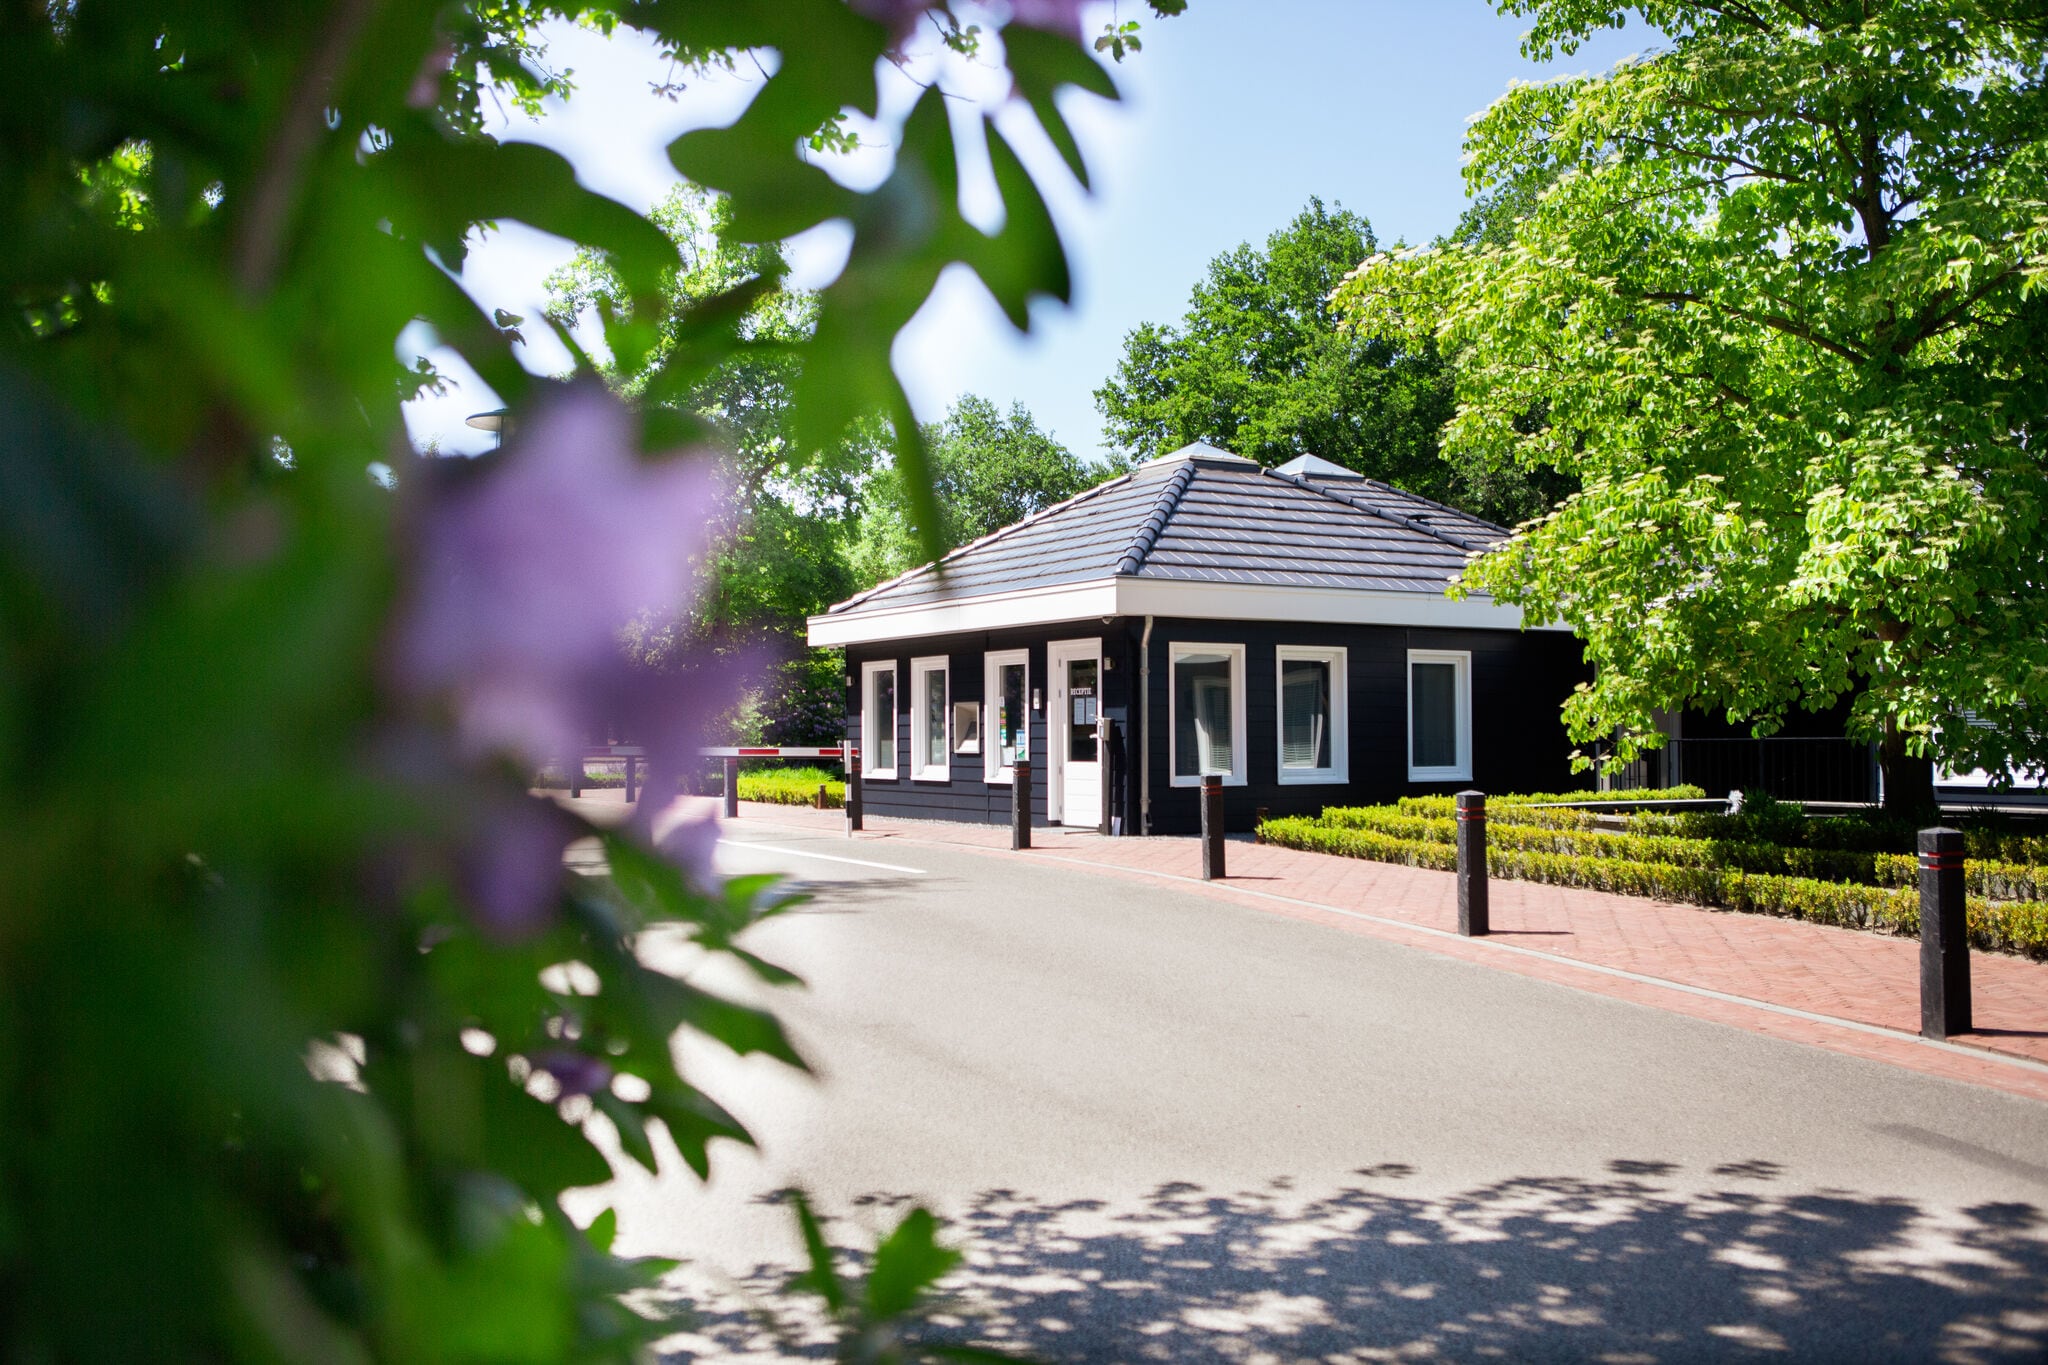 Lodge agréable avec une jolie terrasse situé dans un parc de vacances en Brabant